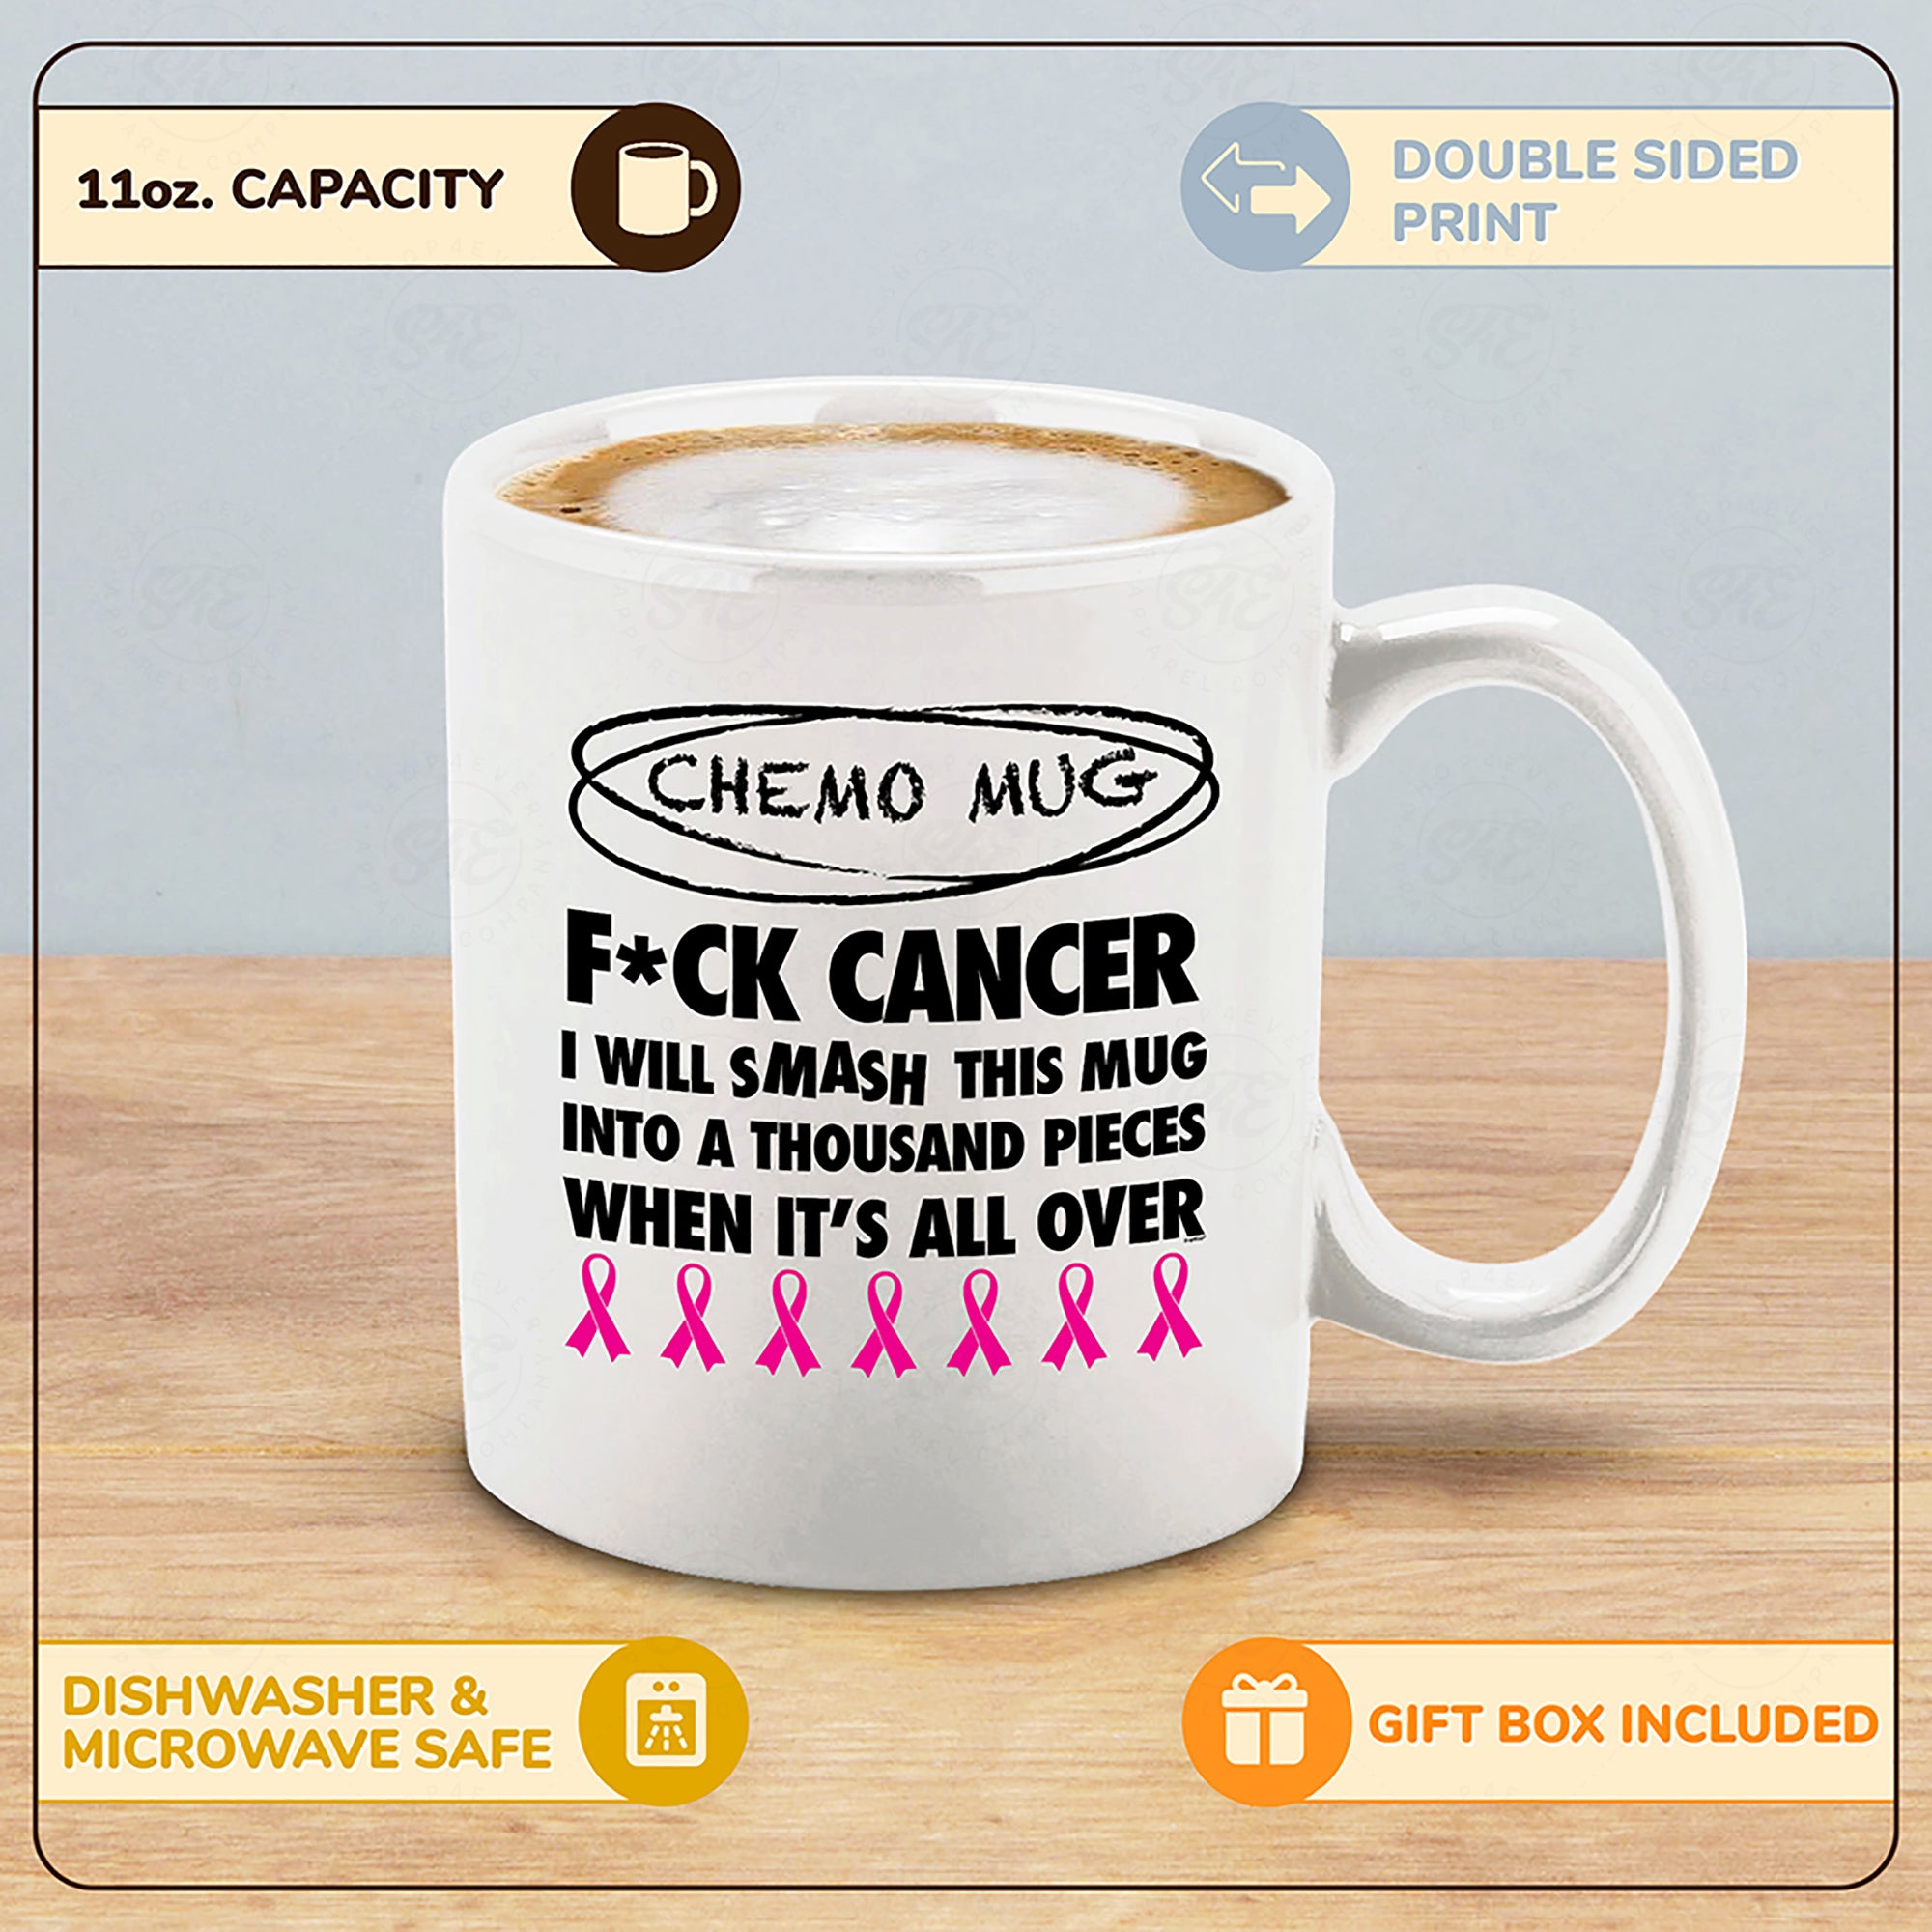 Chemo Mug I Will Smash This Mug Into a Thousand Pieces When It's All Over Ceramic Coffee Mug (White, 11 oz.)